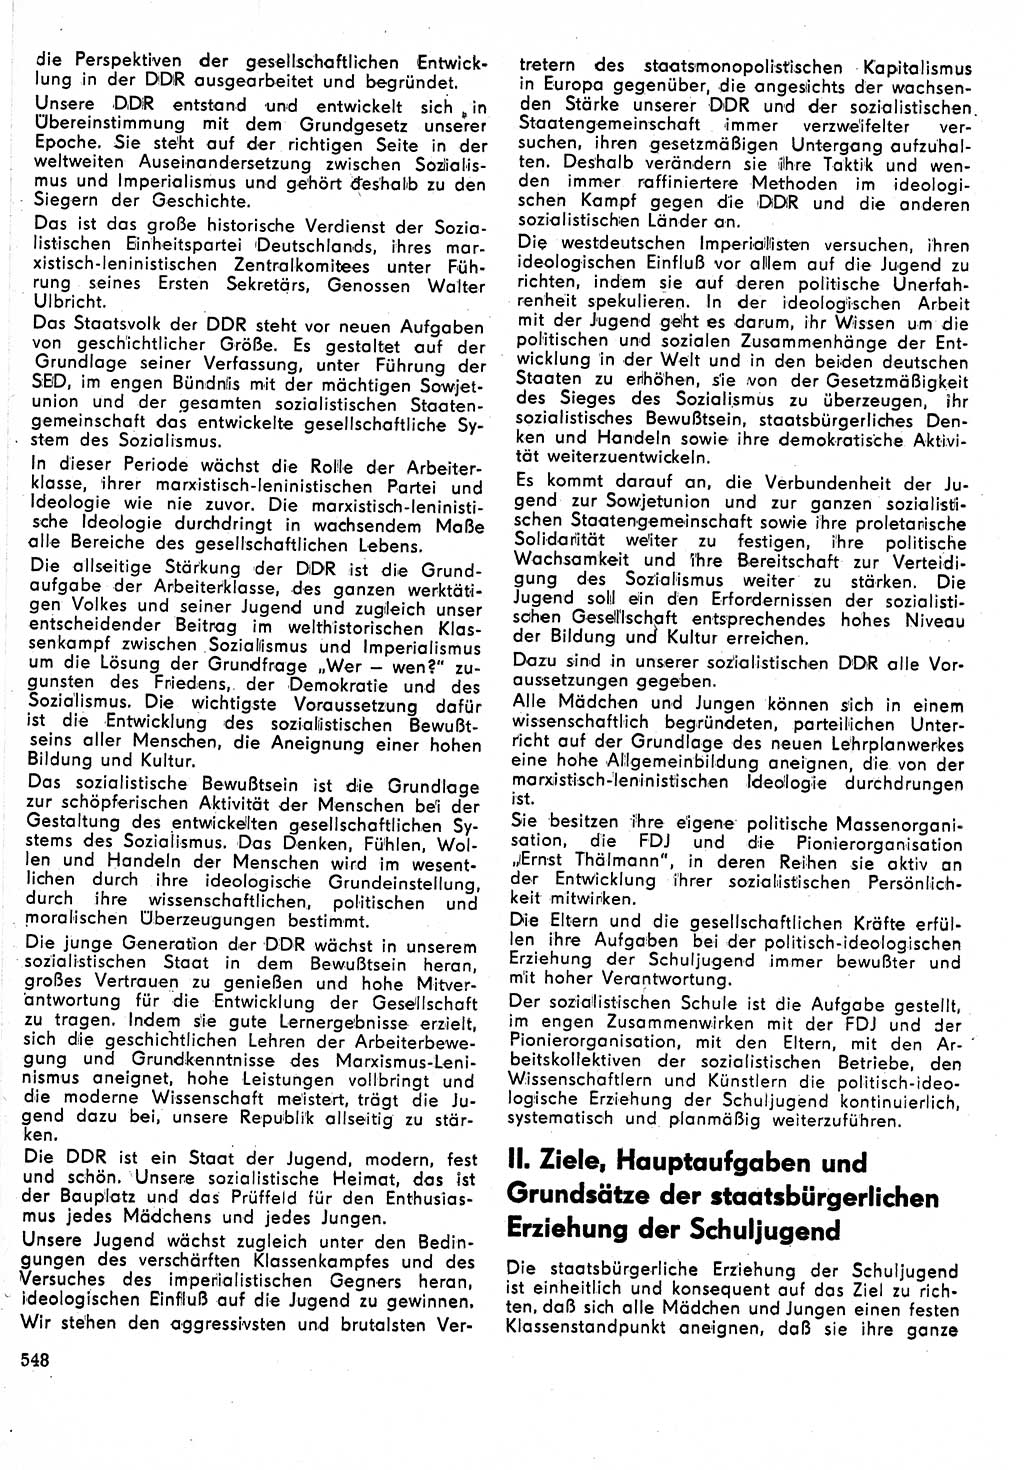 Neuer Weg (NW), Organ des Zentralkomitees (ZK) der SED (Sozialistische Einheitspartei Deutschlands) für Fragen des Parteilebens, 24. Jahrgang [Deutsche Demokratische Republik (DDR)] 1969, Seite 548 (NW ZK SED DDR 1969, S. 548)